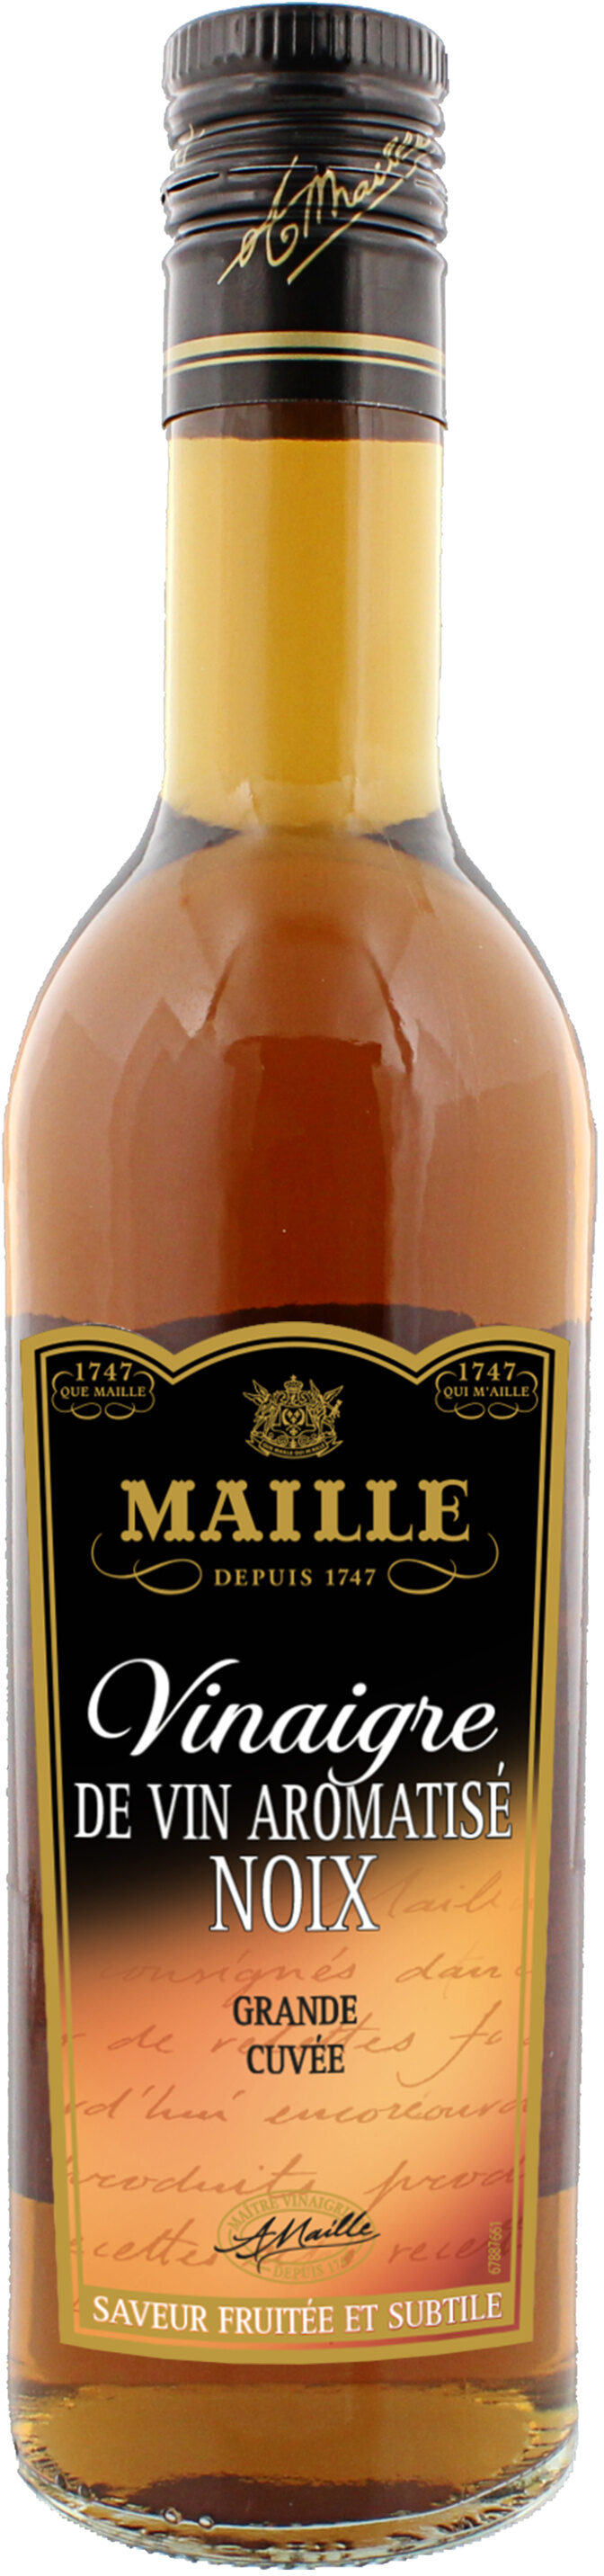 Maille vin noix - Produit - fr